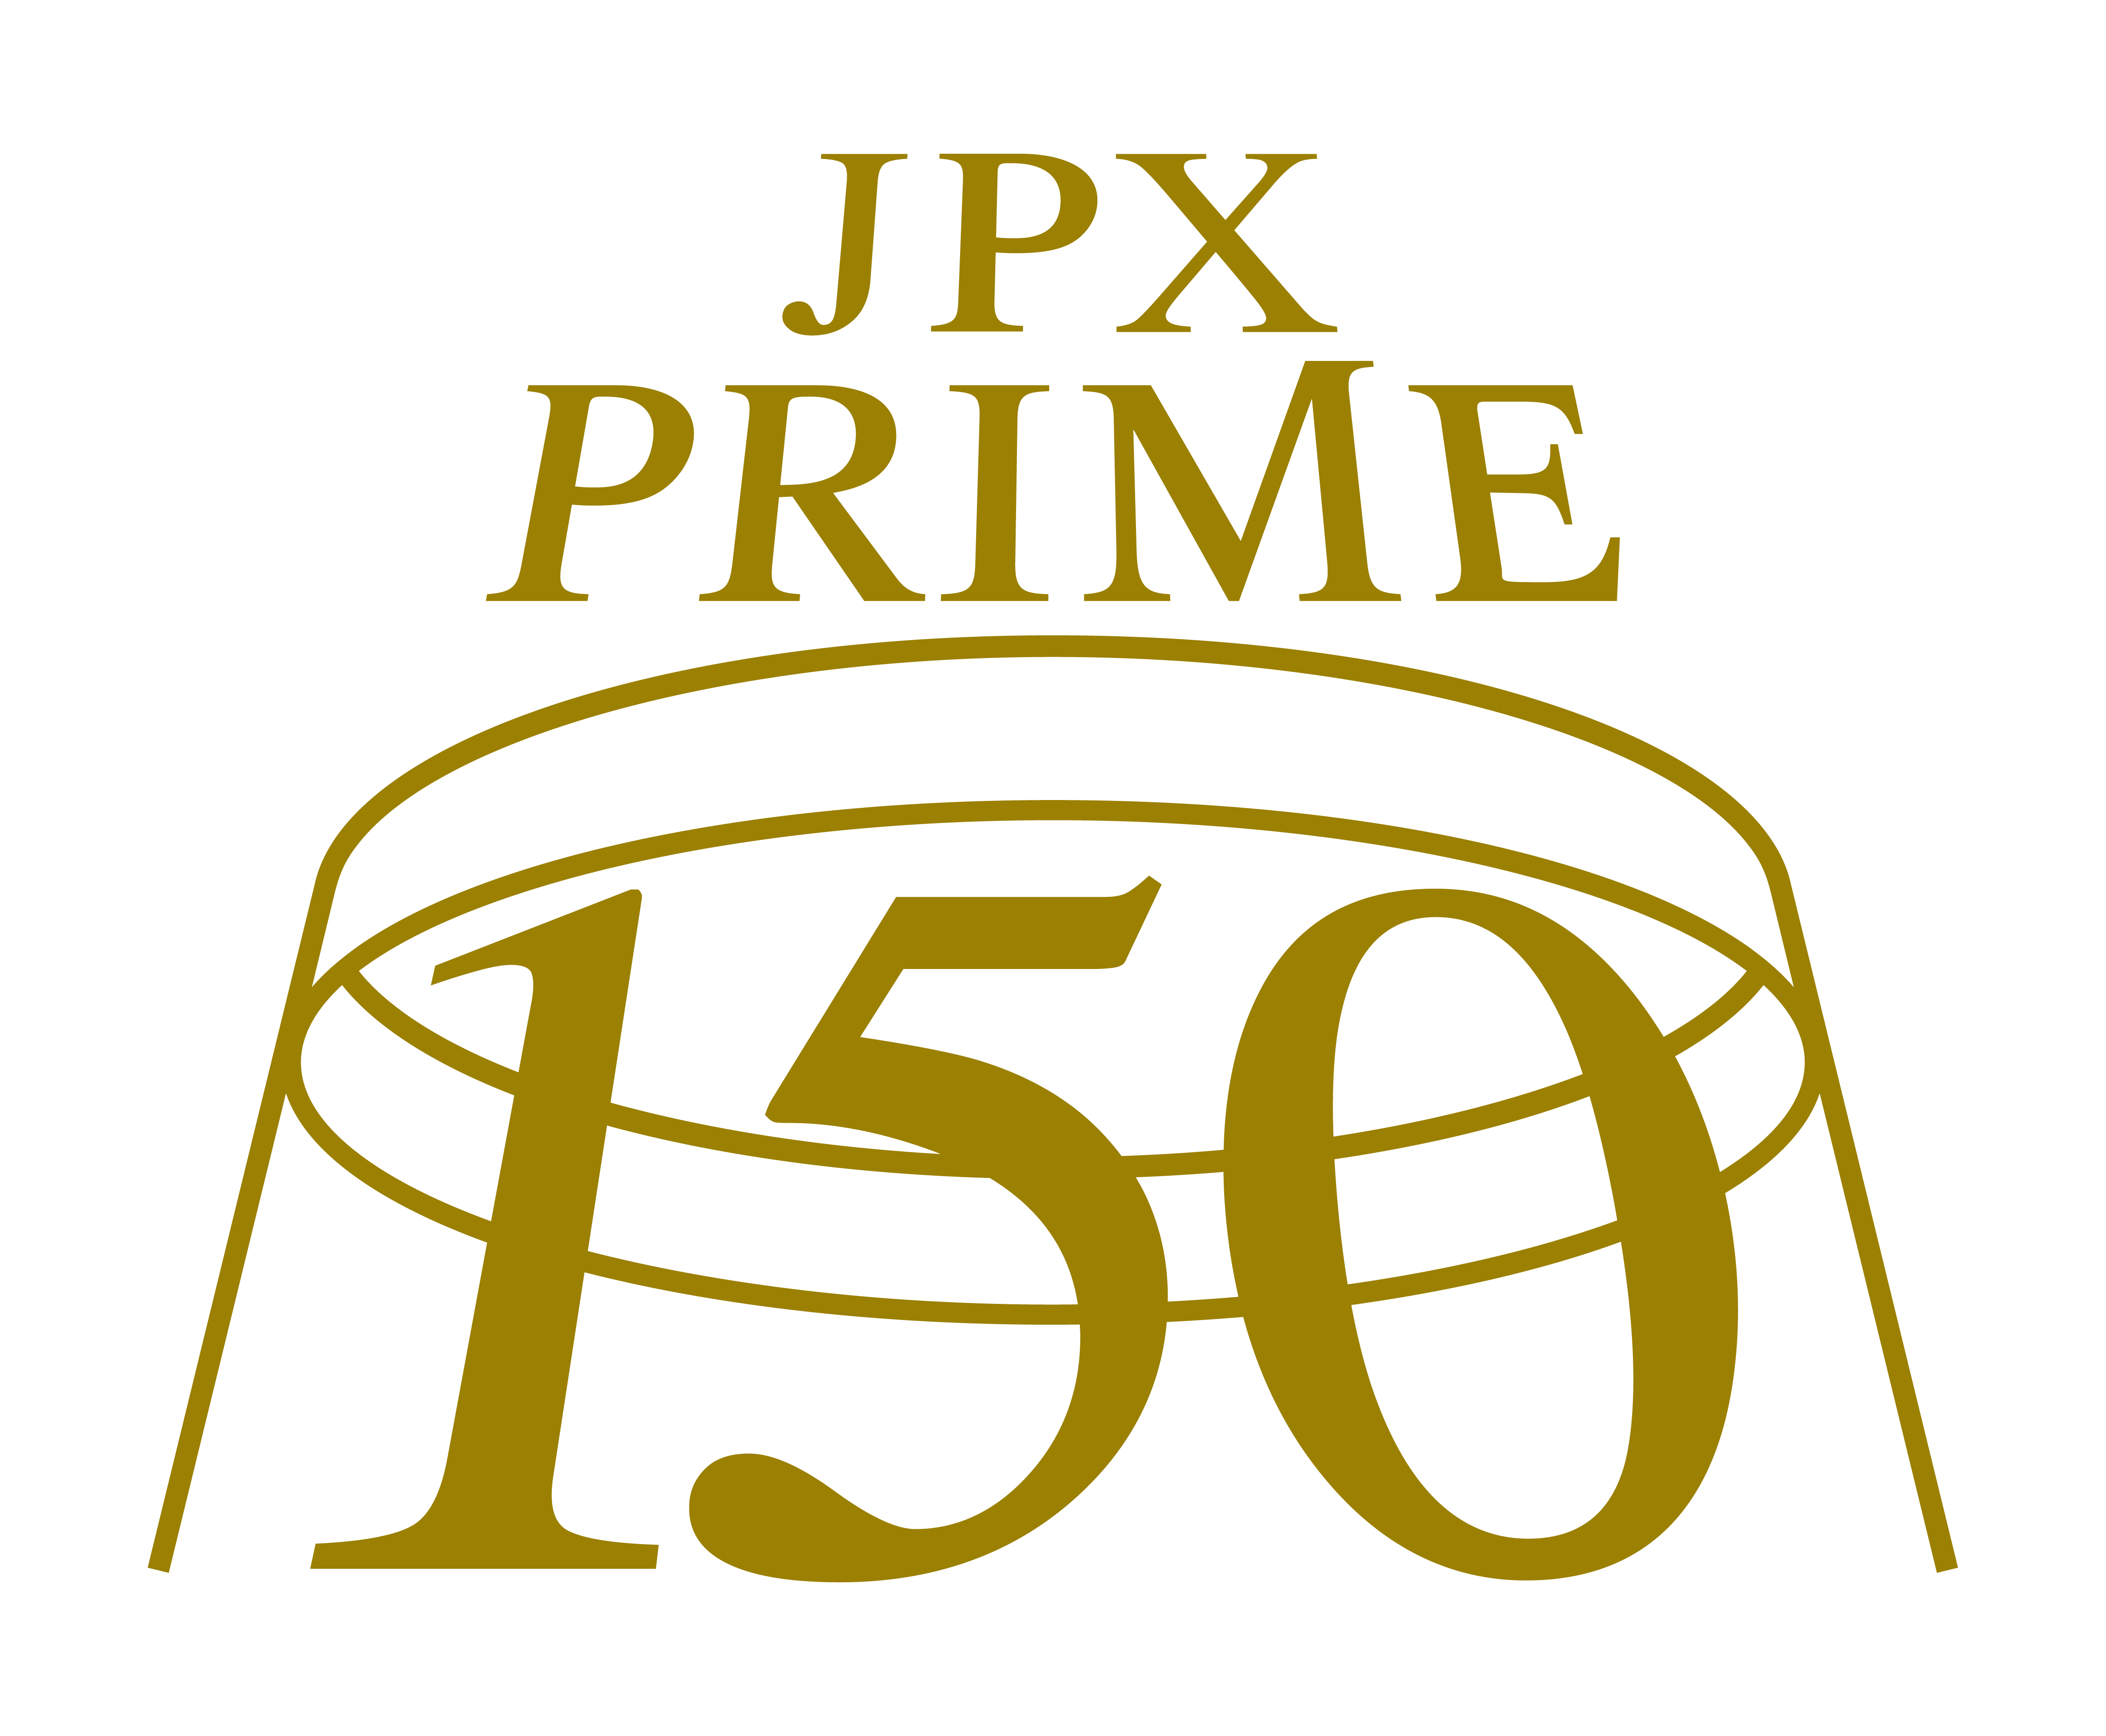 JPX PRIME